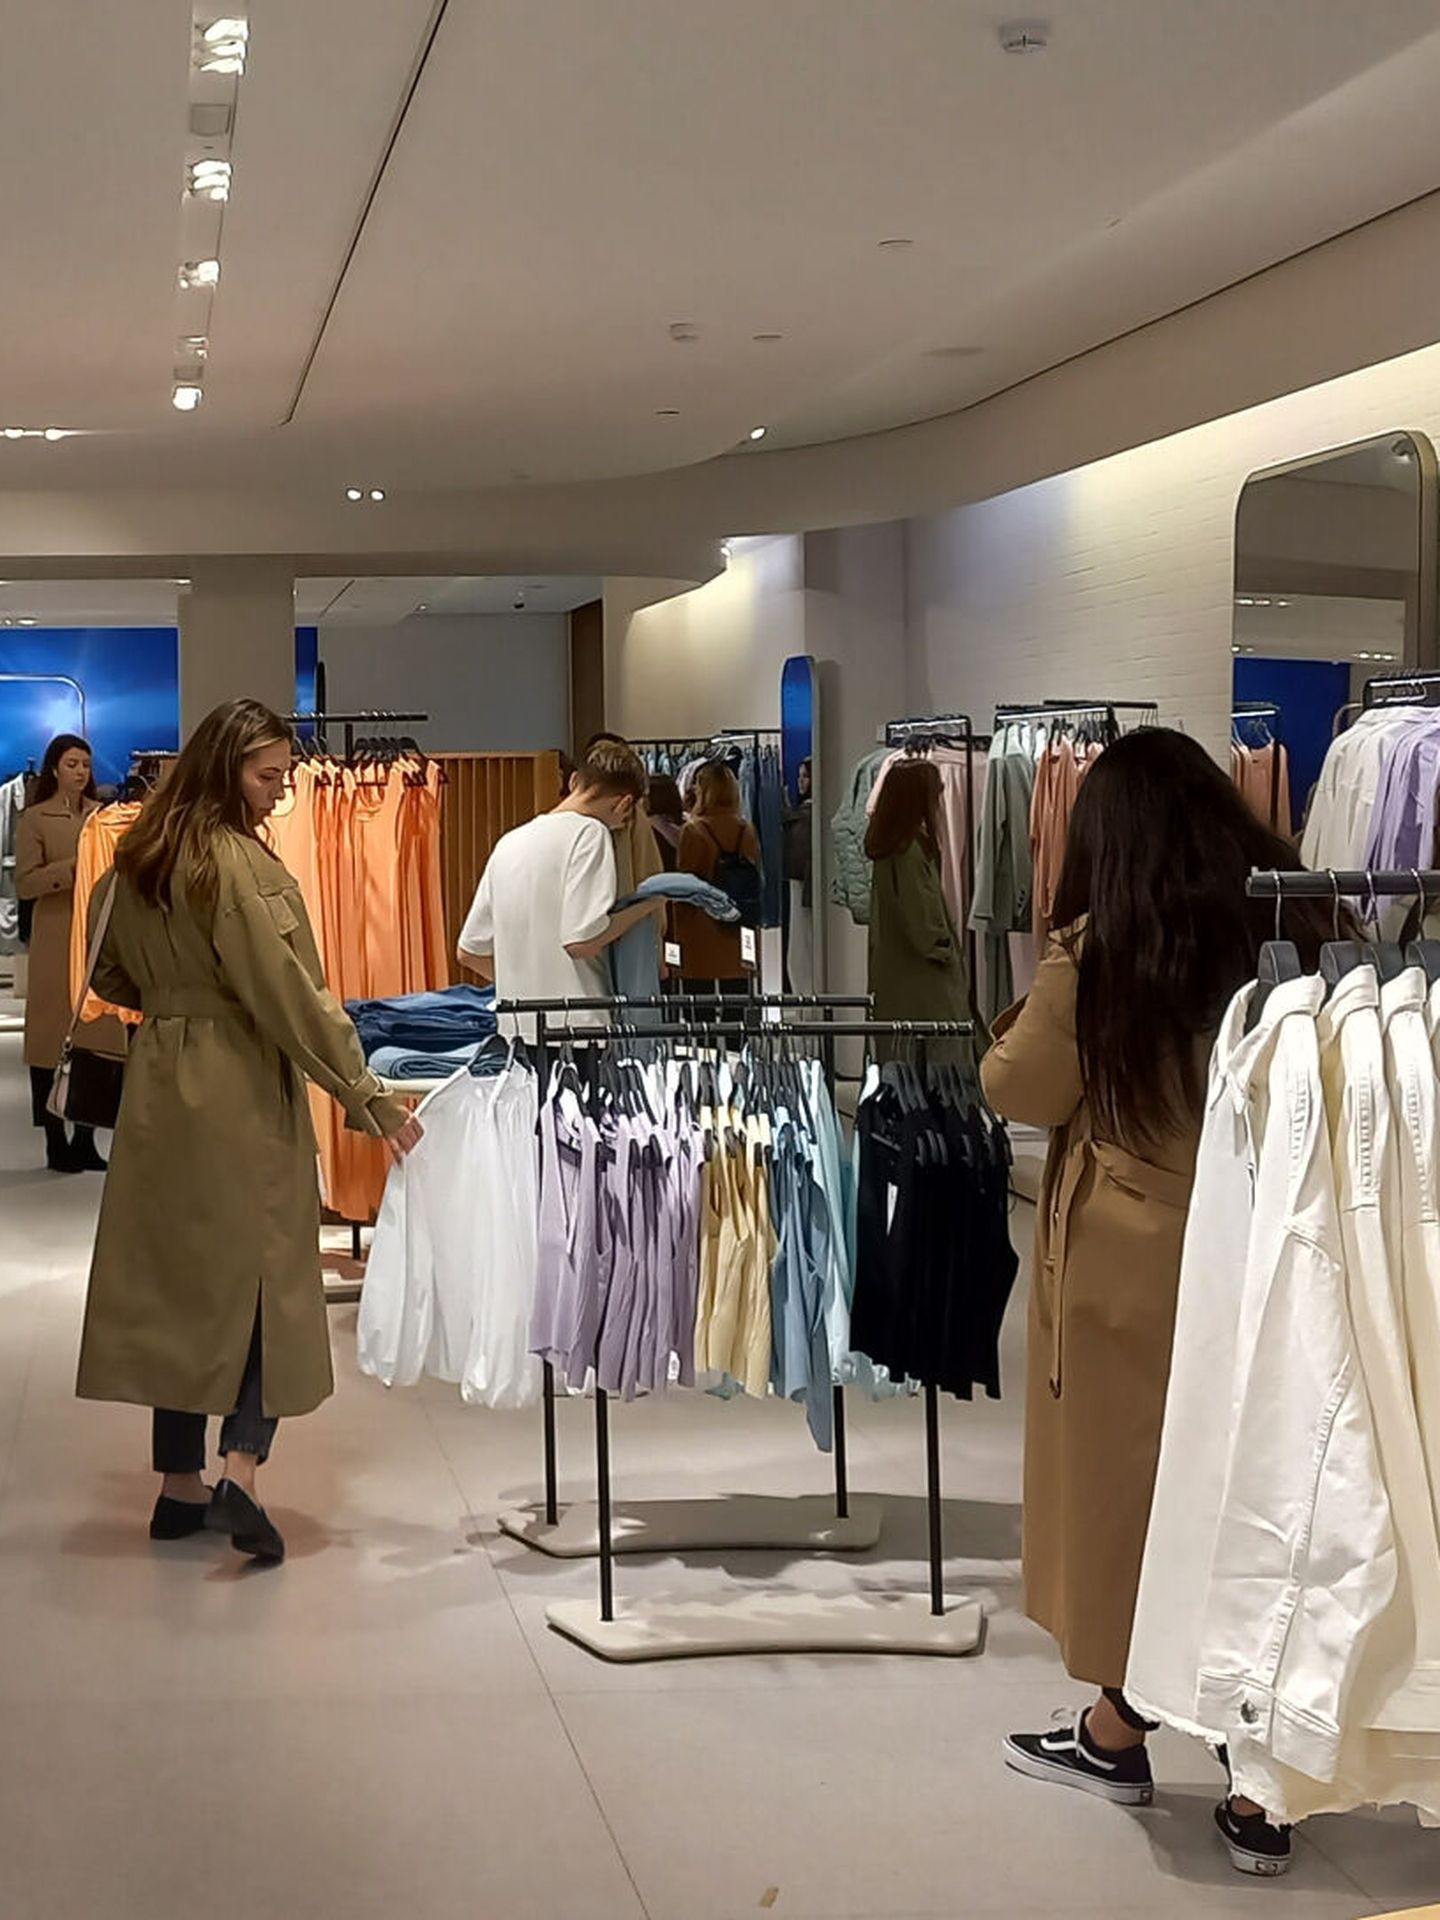 Empiezan las rebajas en Zara: cómo conseguir tus prendas favoritas antes  que nadie